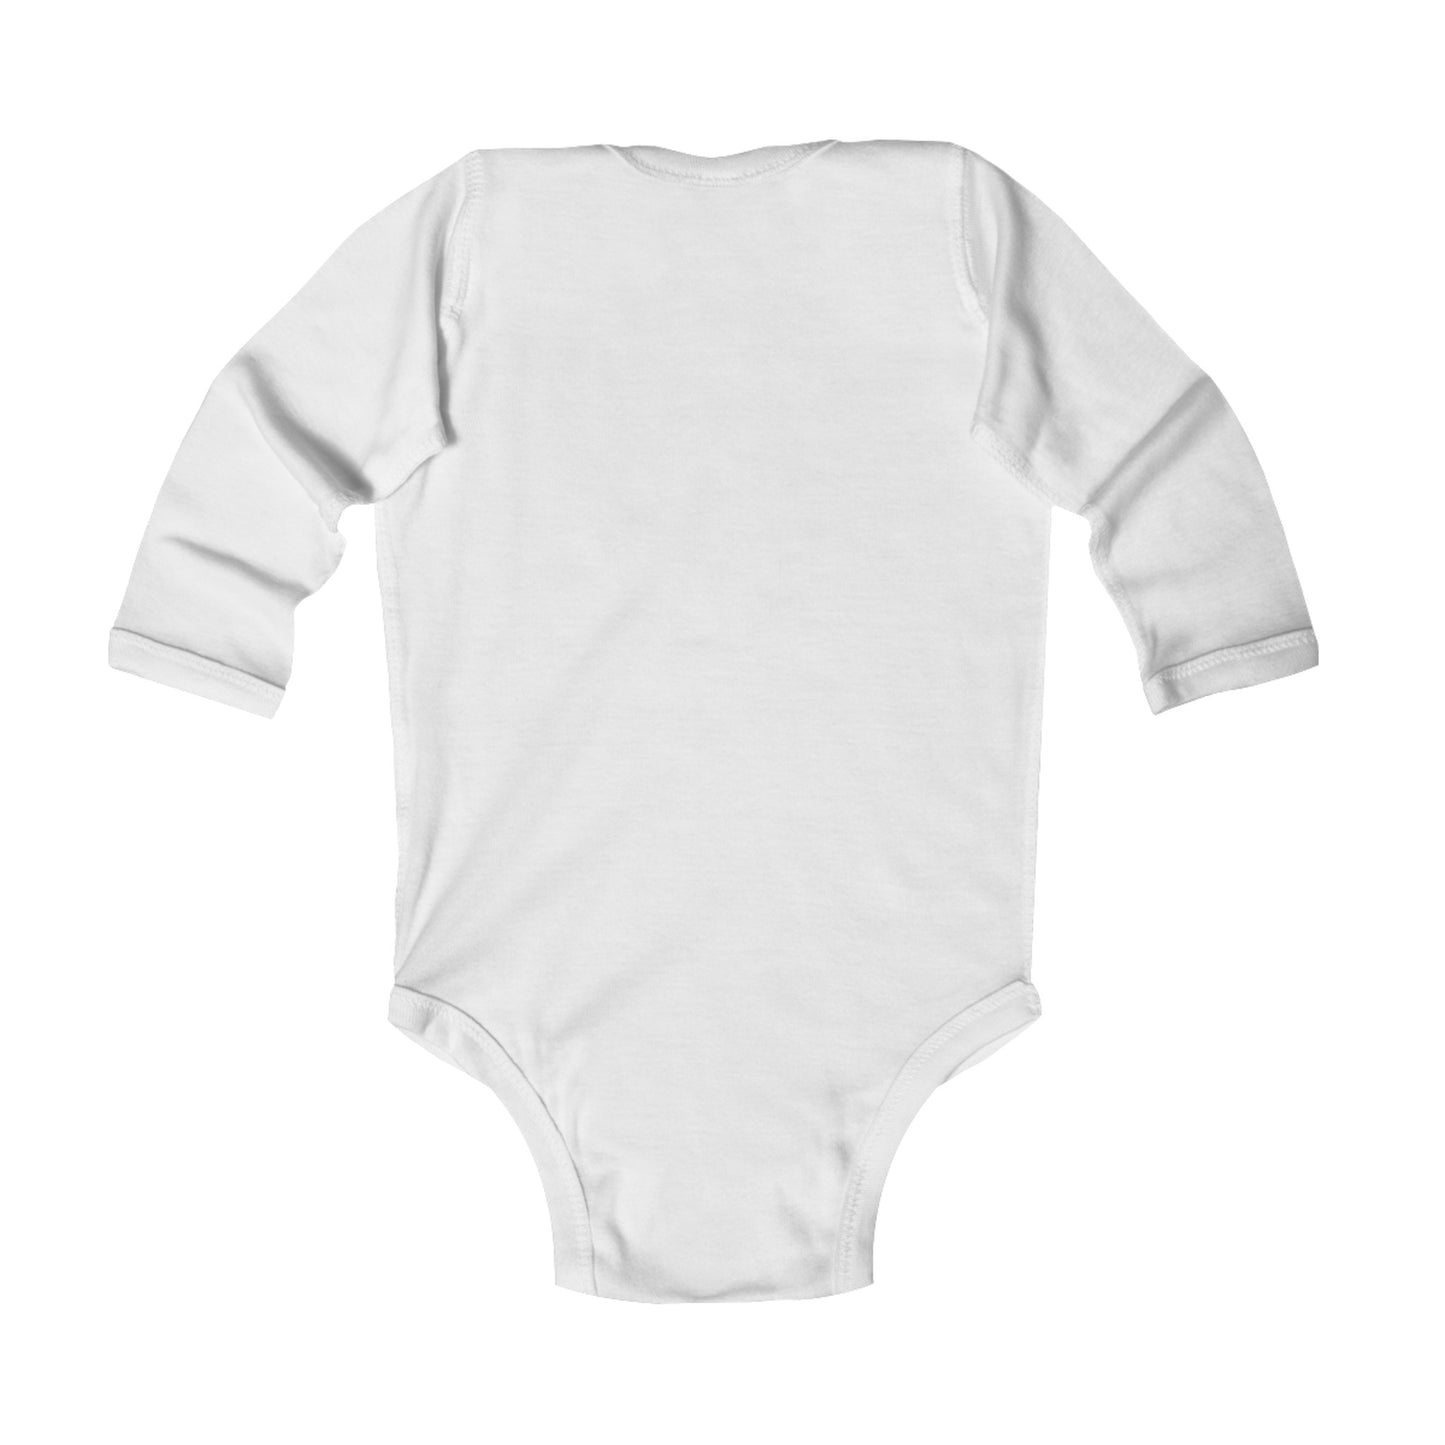 Heart MELT™ Infant Long Sleeve Onesie